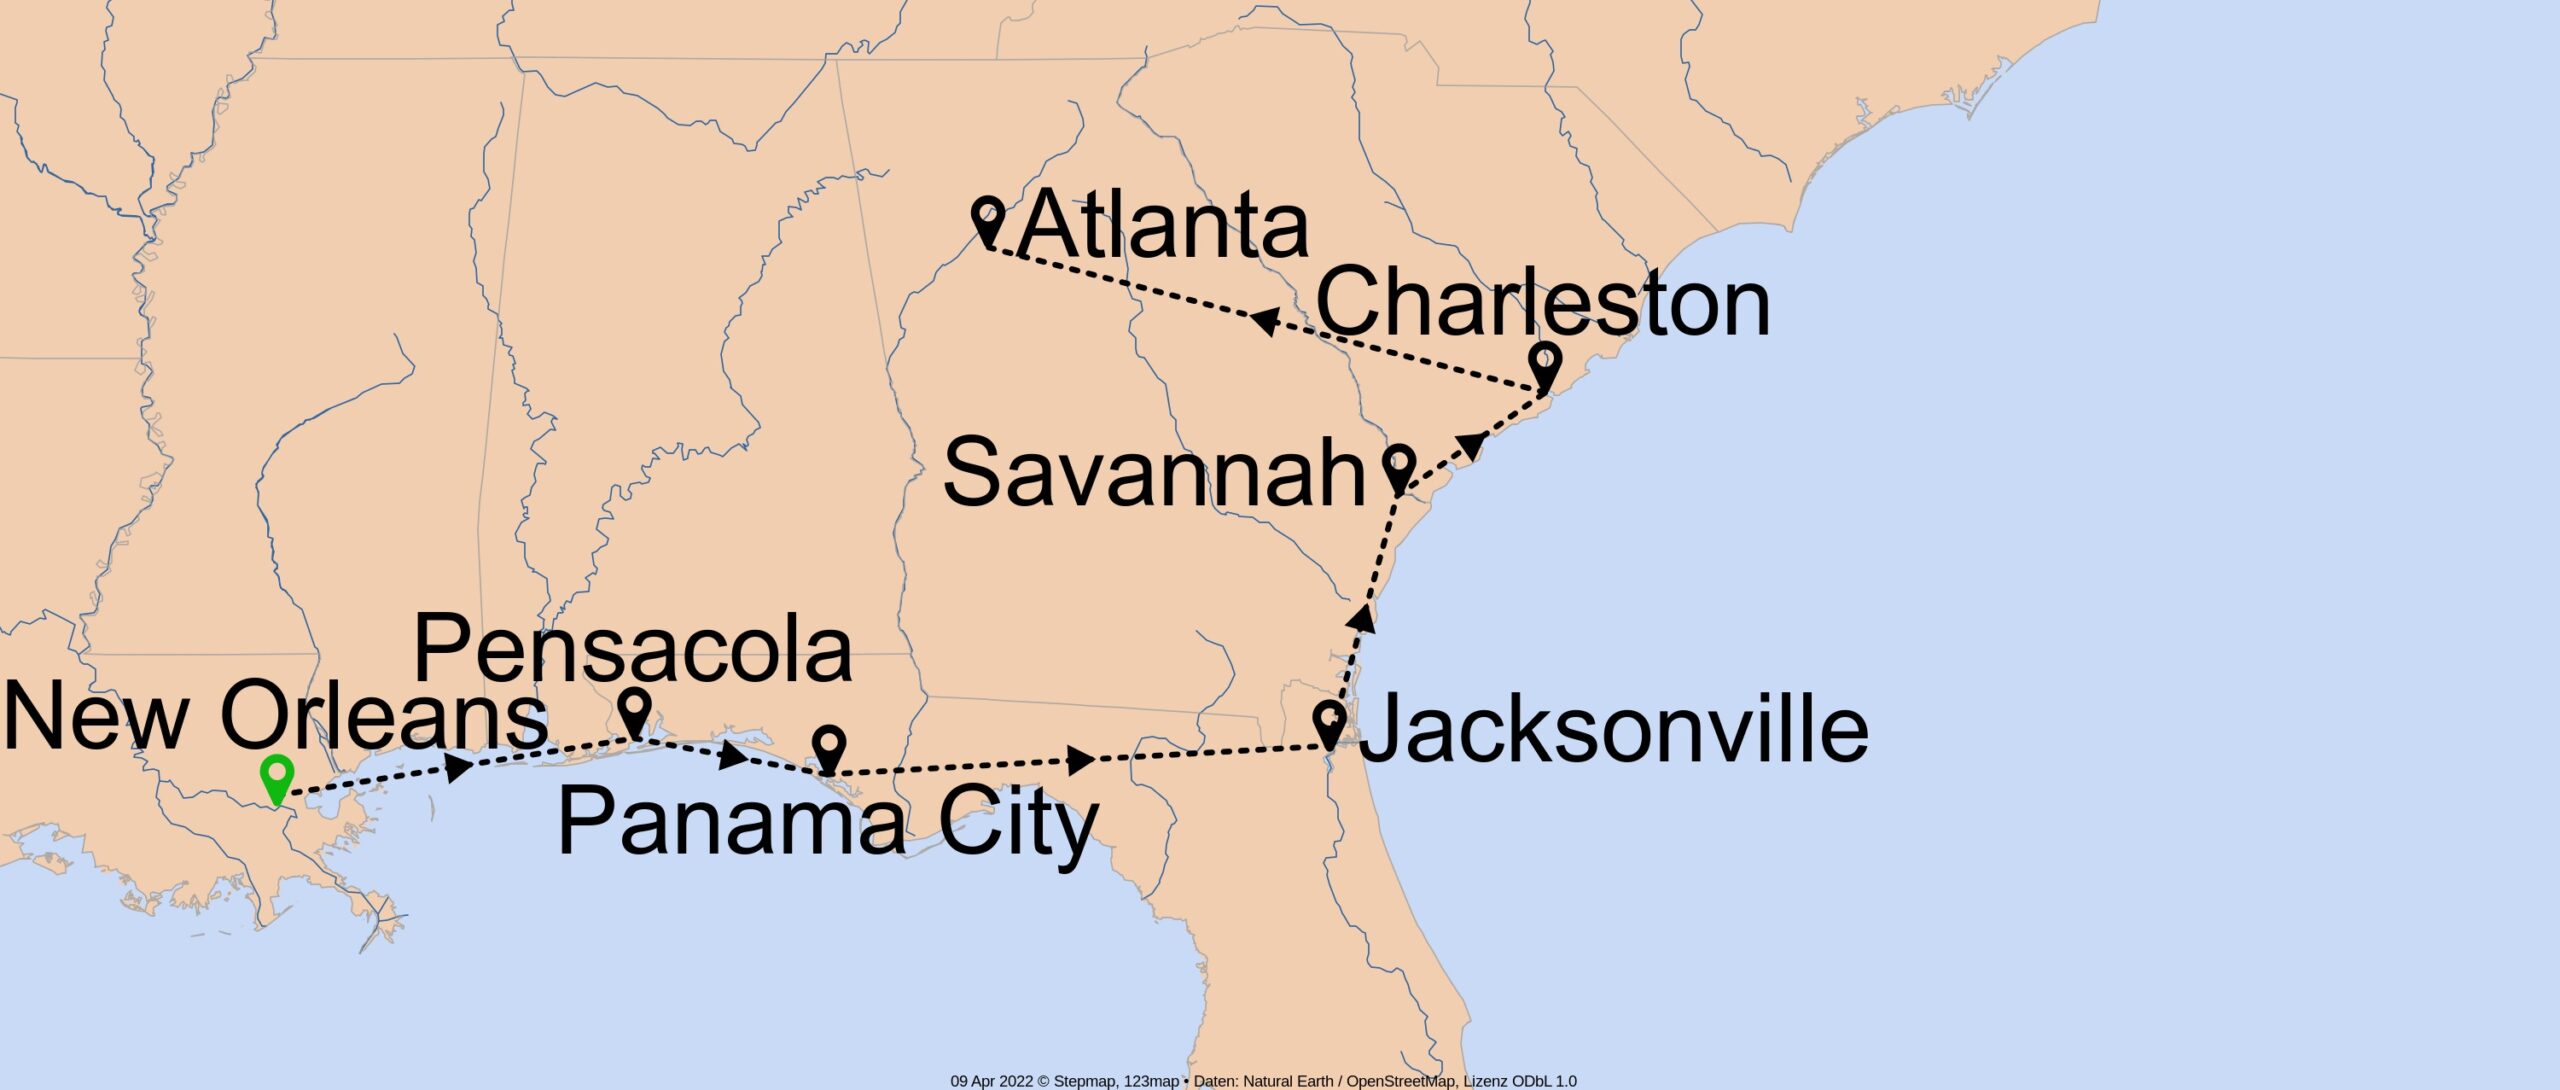 Quer durch den historischen Süden - E-1399 - Individuell von New Orleans bis Atlanta Nr. 16